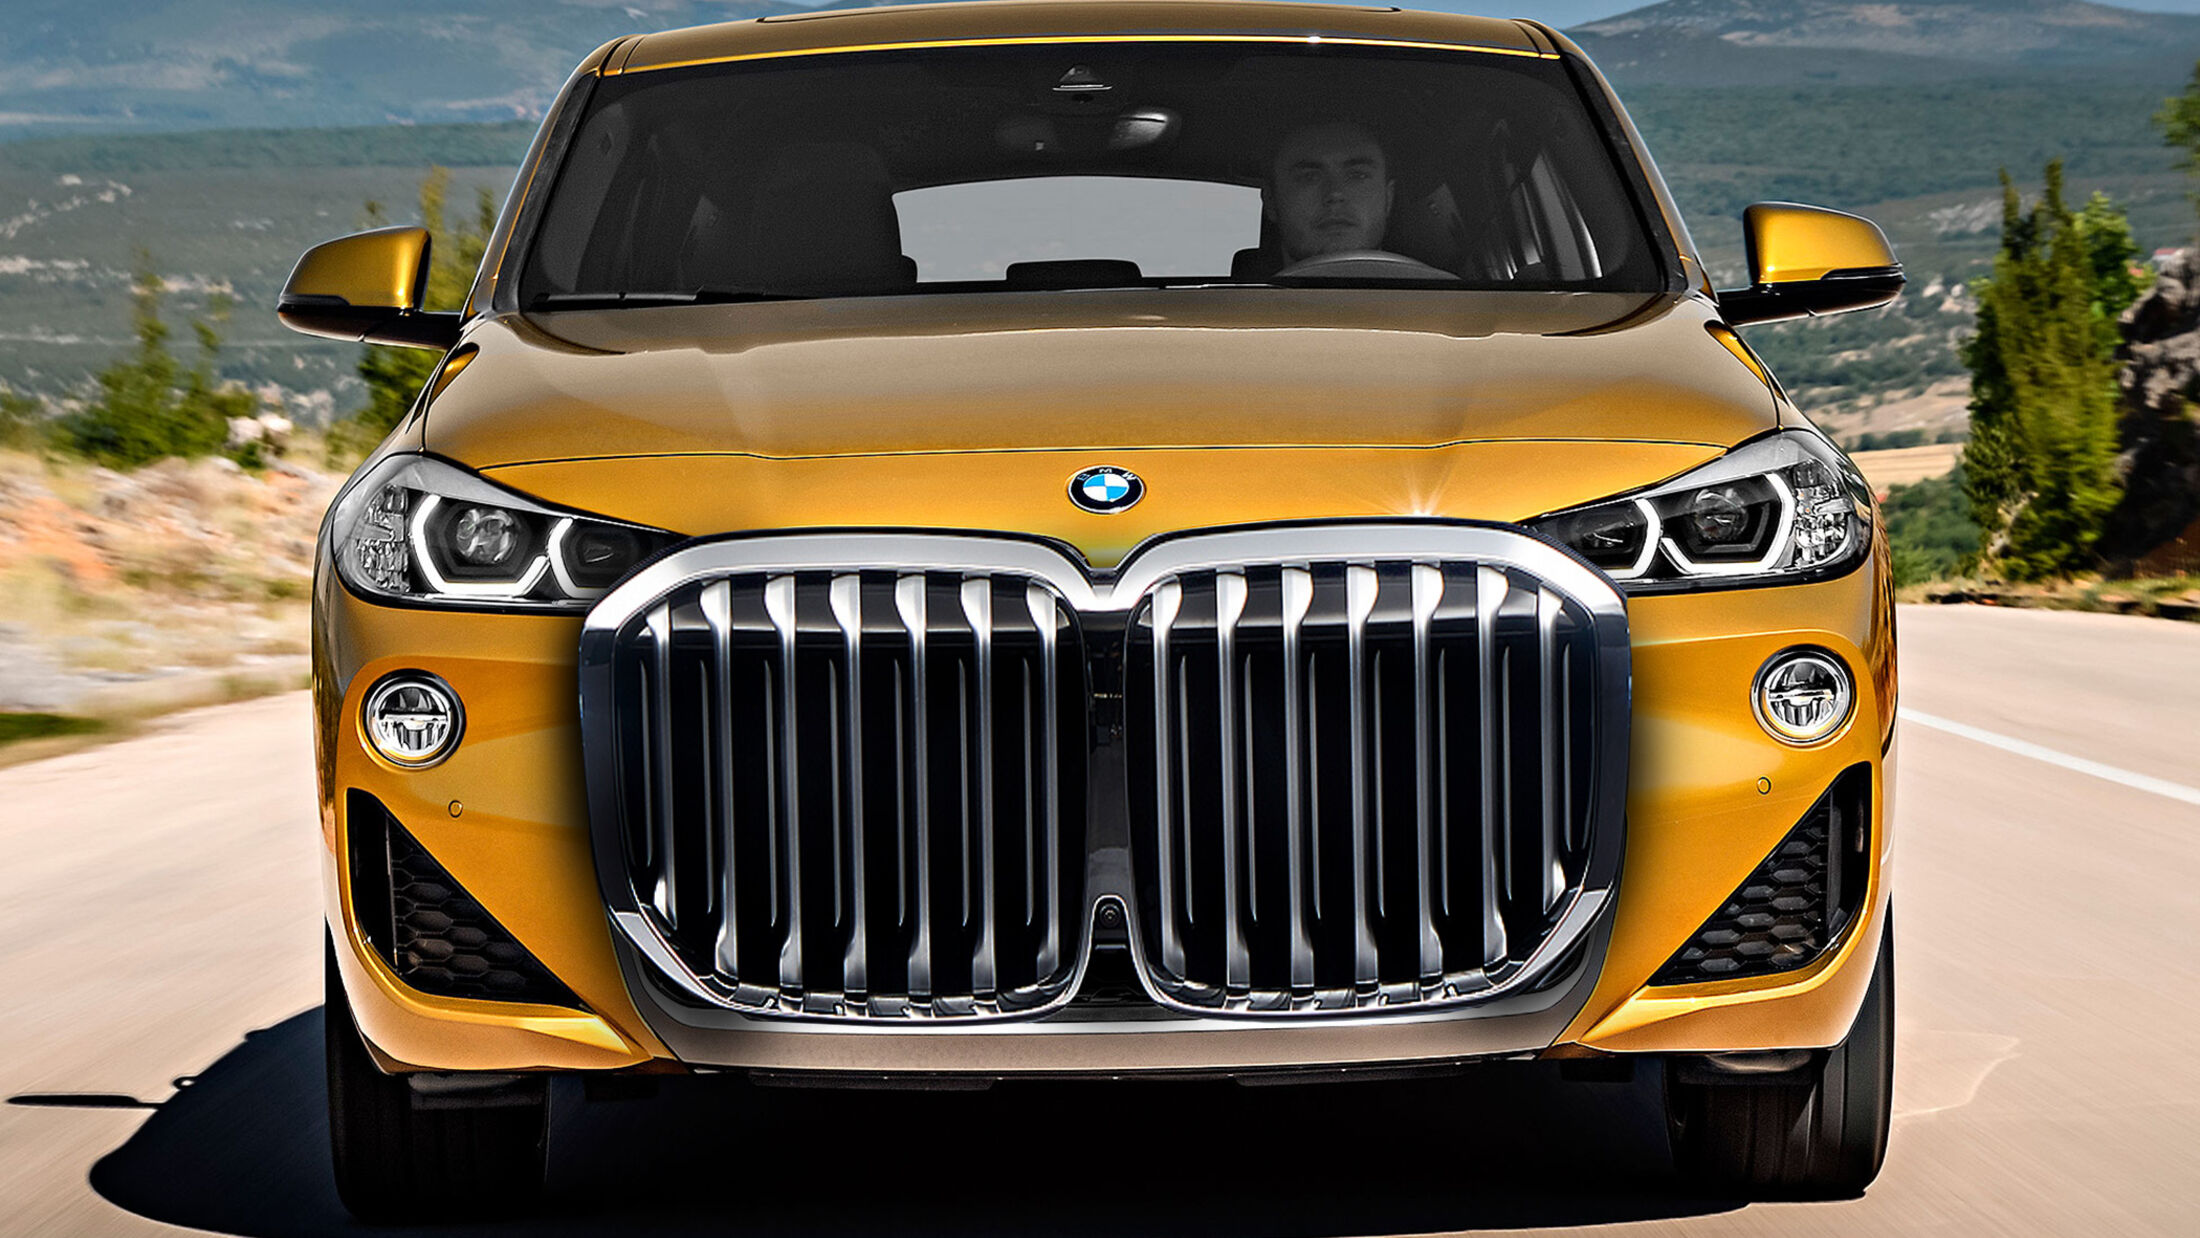 BMW verteidigt Design: Riesen-Niere ist ein riesen Ding